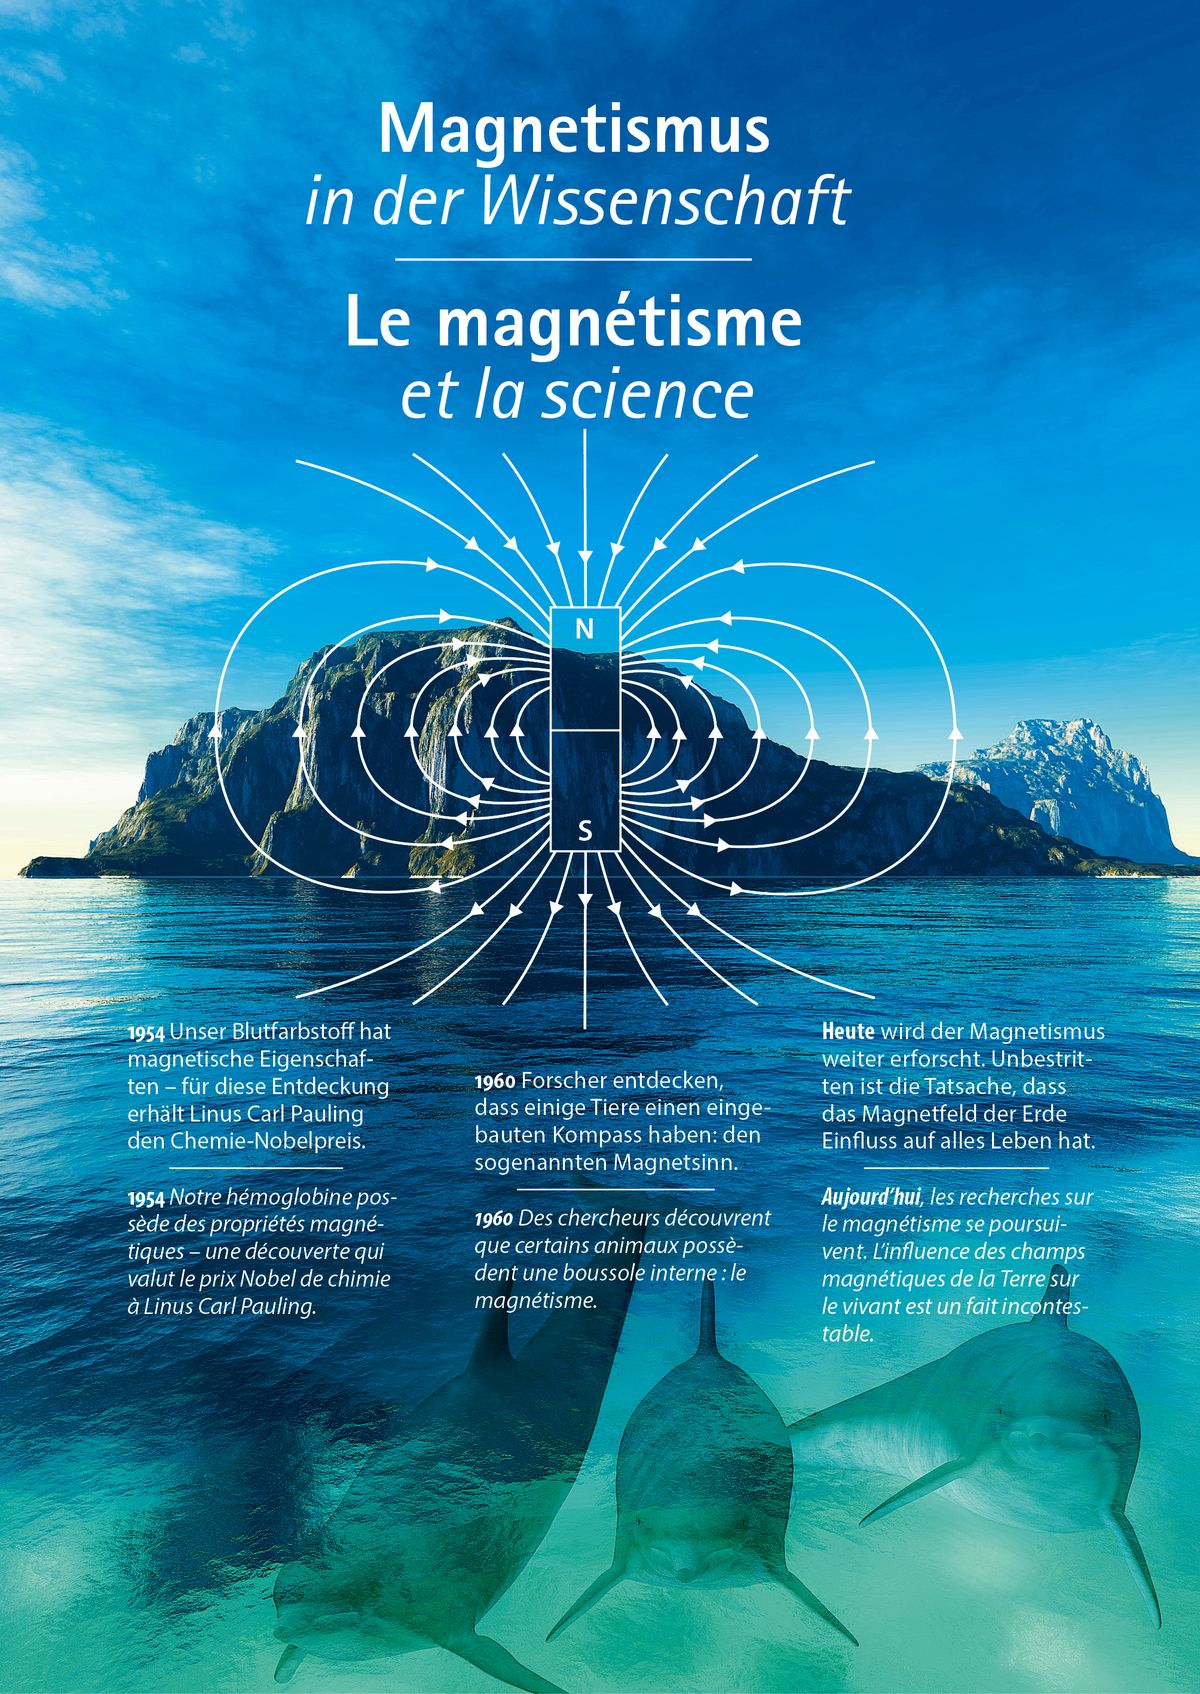 2-Le Magnétisme et la science